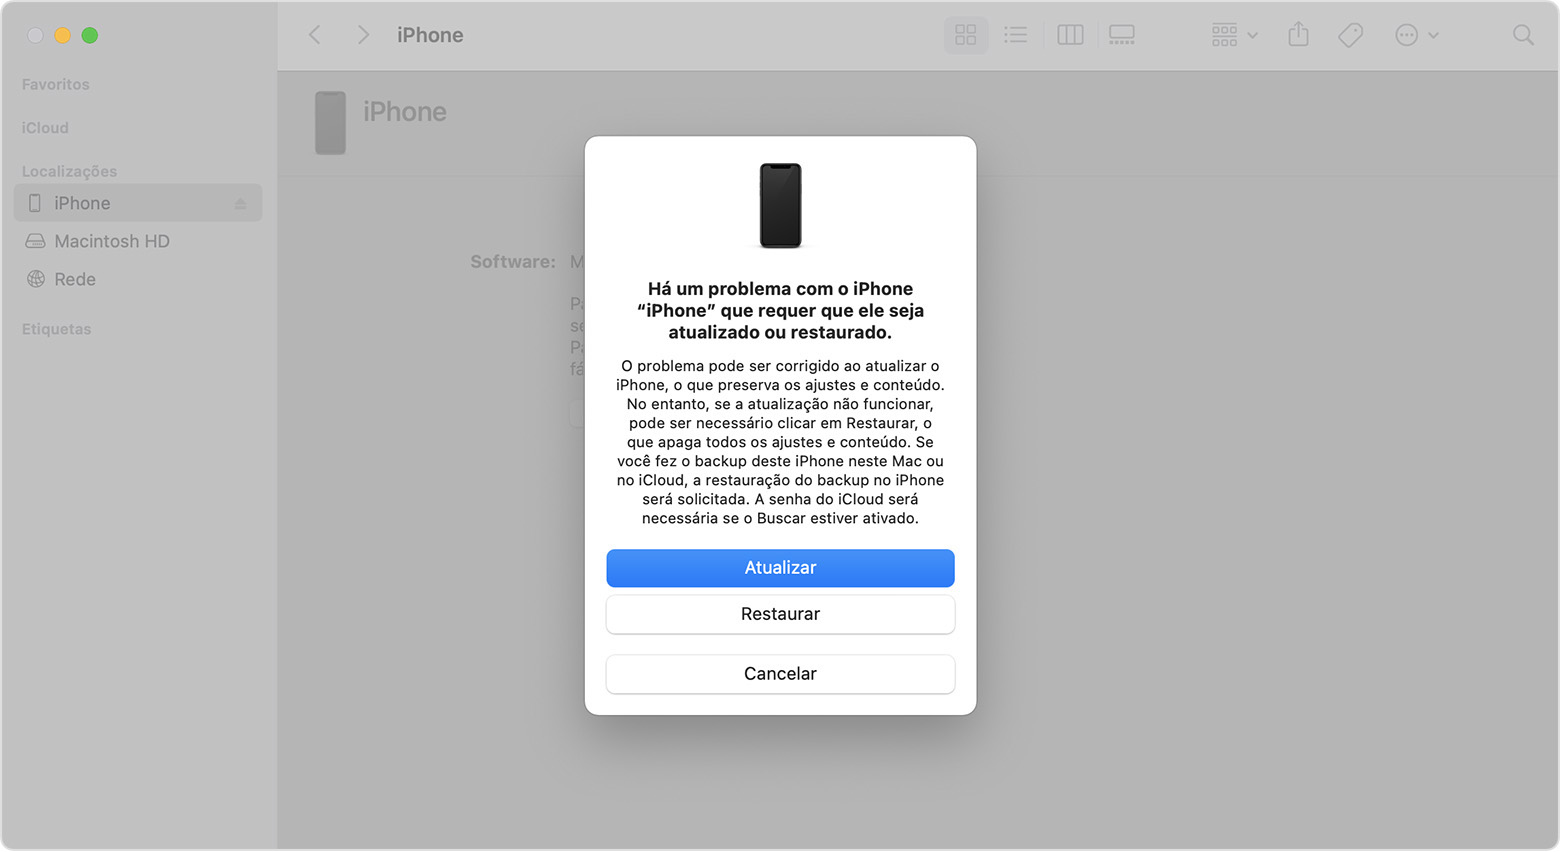 Janela do Finder em um Mac mostrando opções para restaurar ou atualizar o iPhone